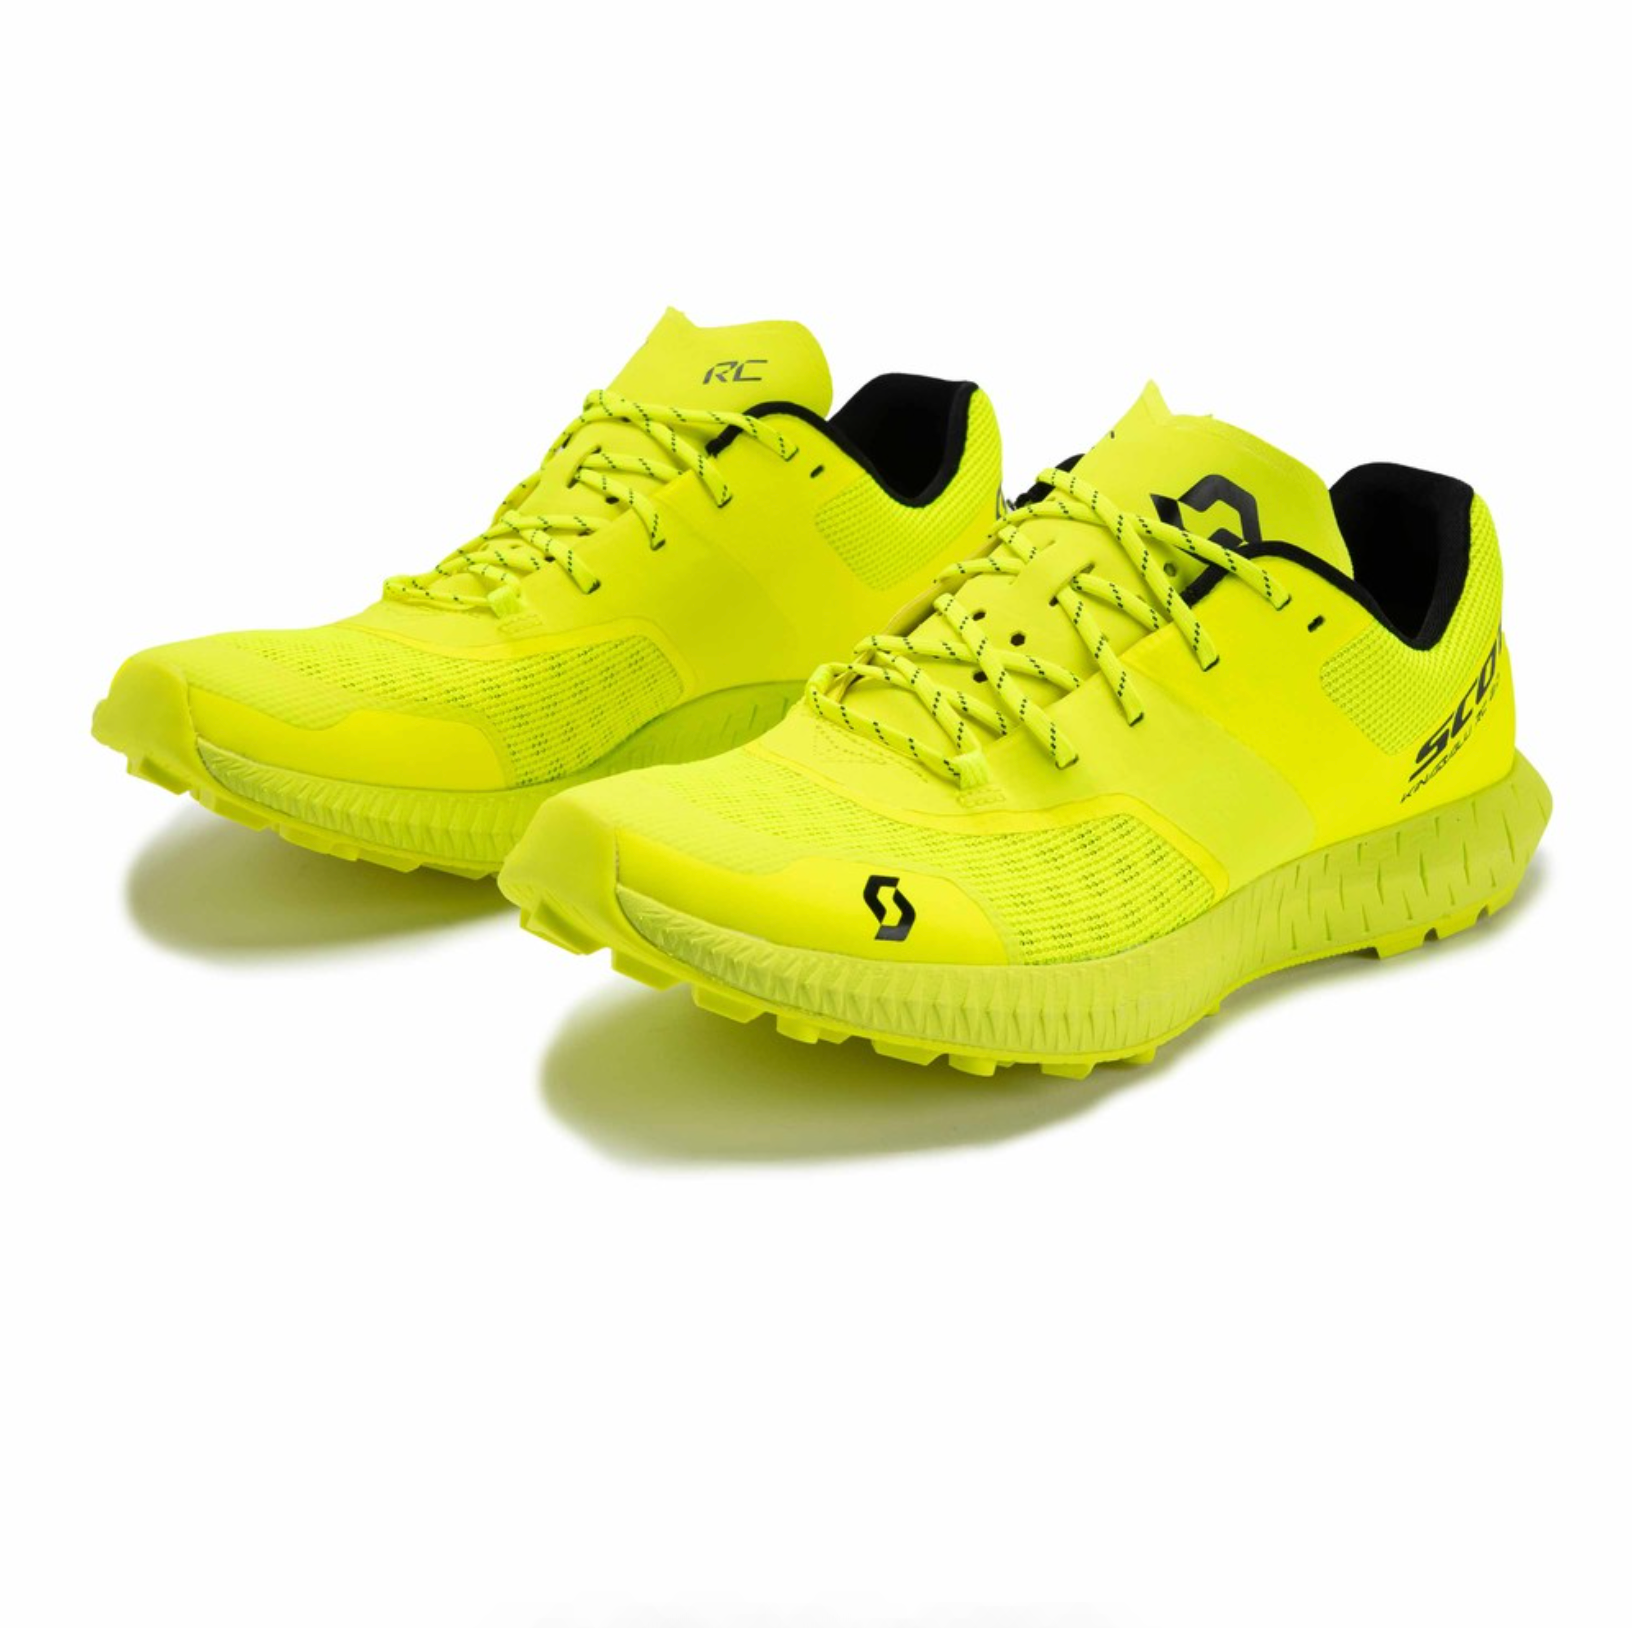 Scott Kinabalu RC 2 Womens Trail Running Shoes